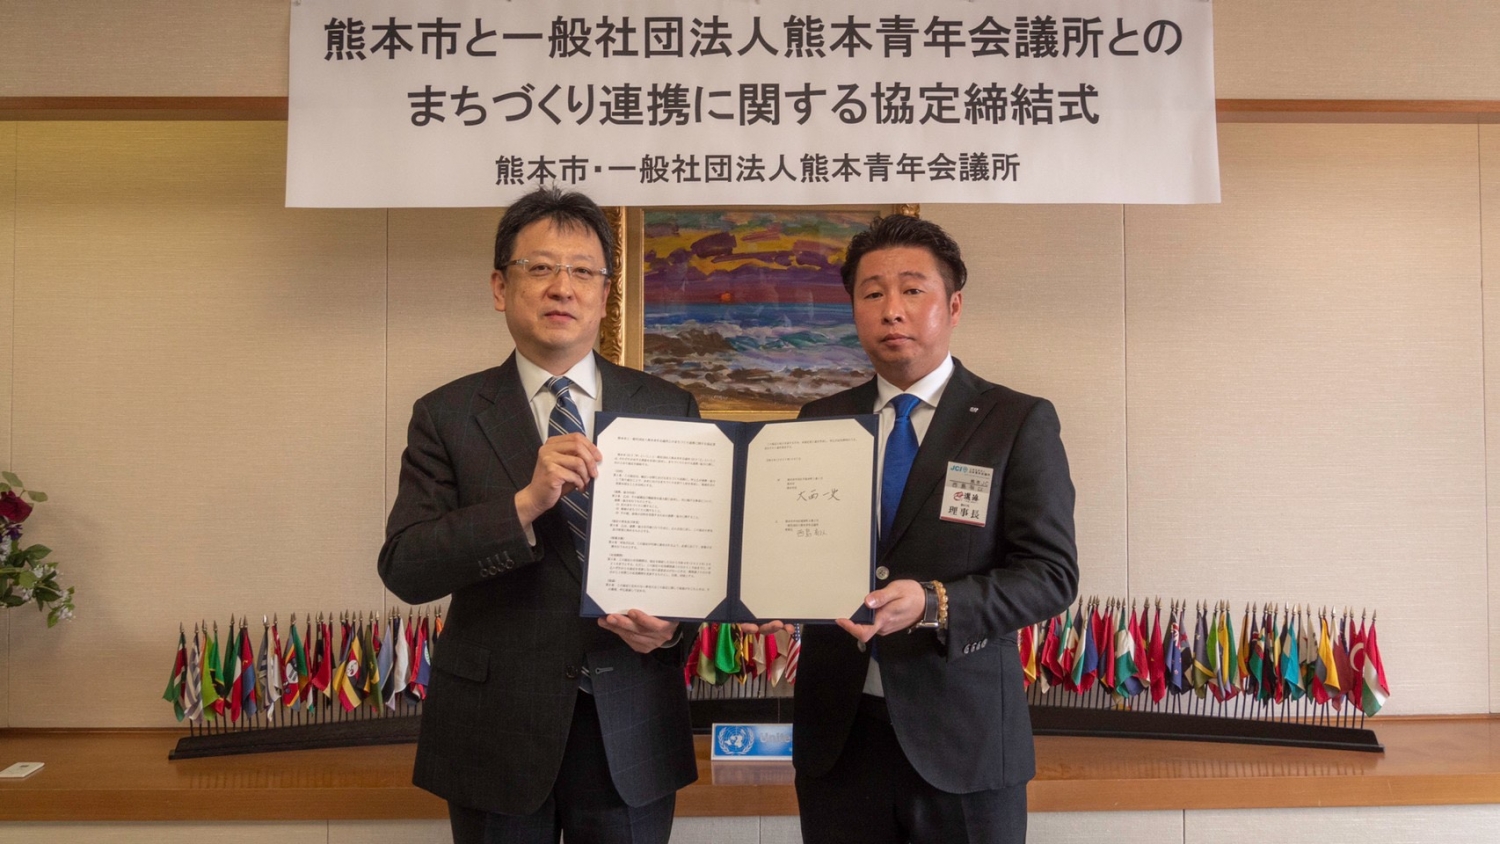 【JCI熊本】熊本市とまちづくり連携に関する協定を結びました